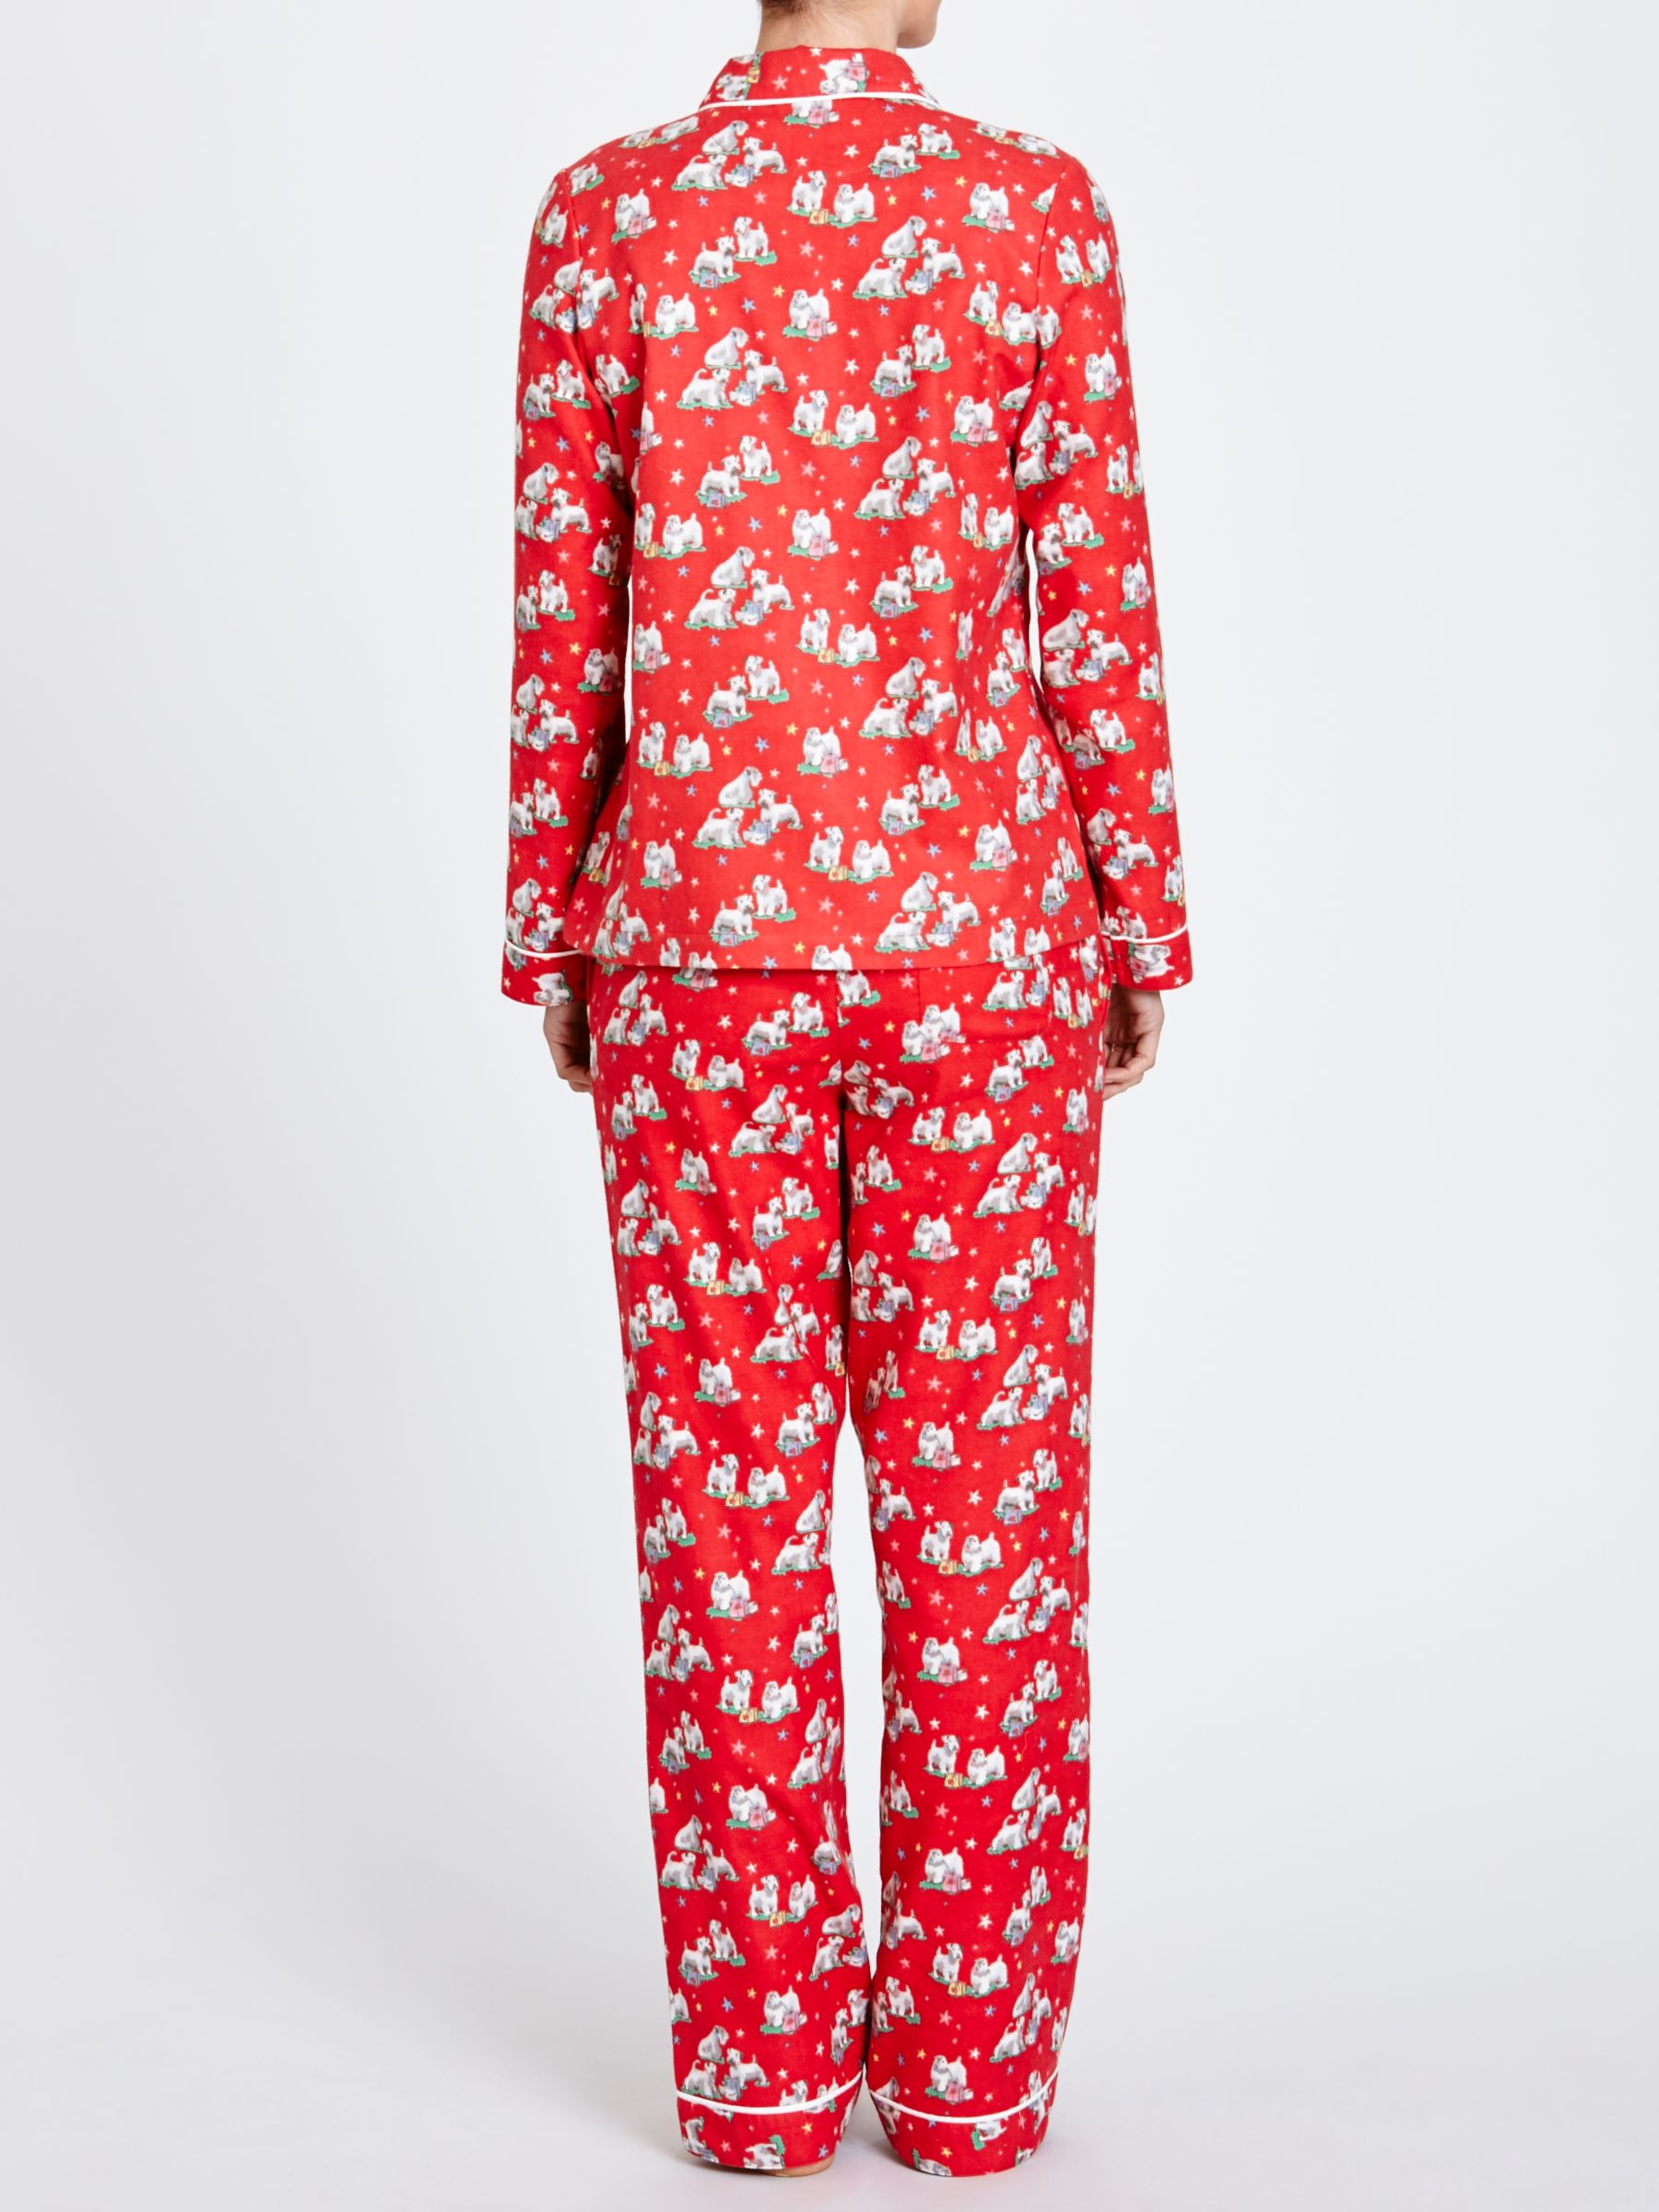 cath kidston christmas pyjamas